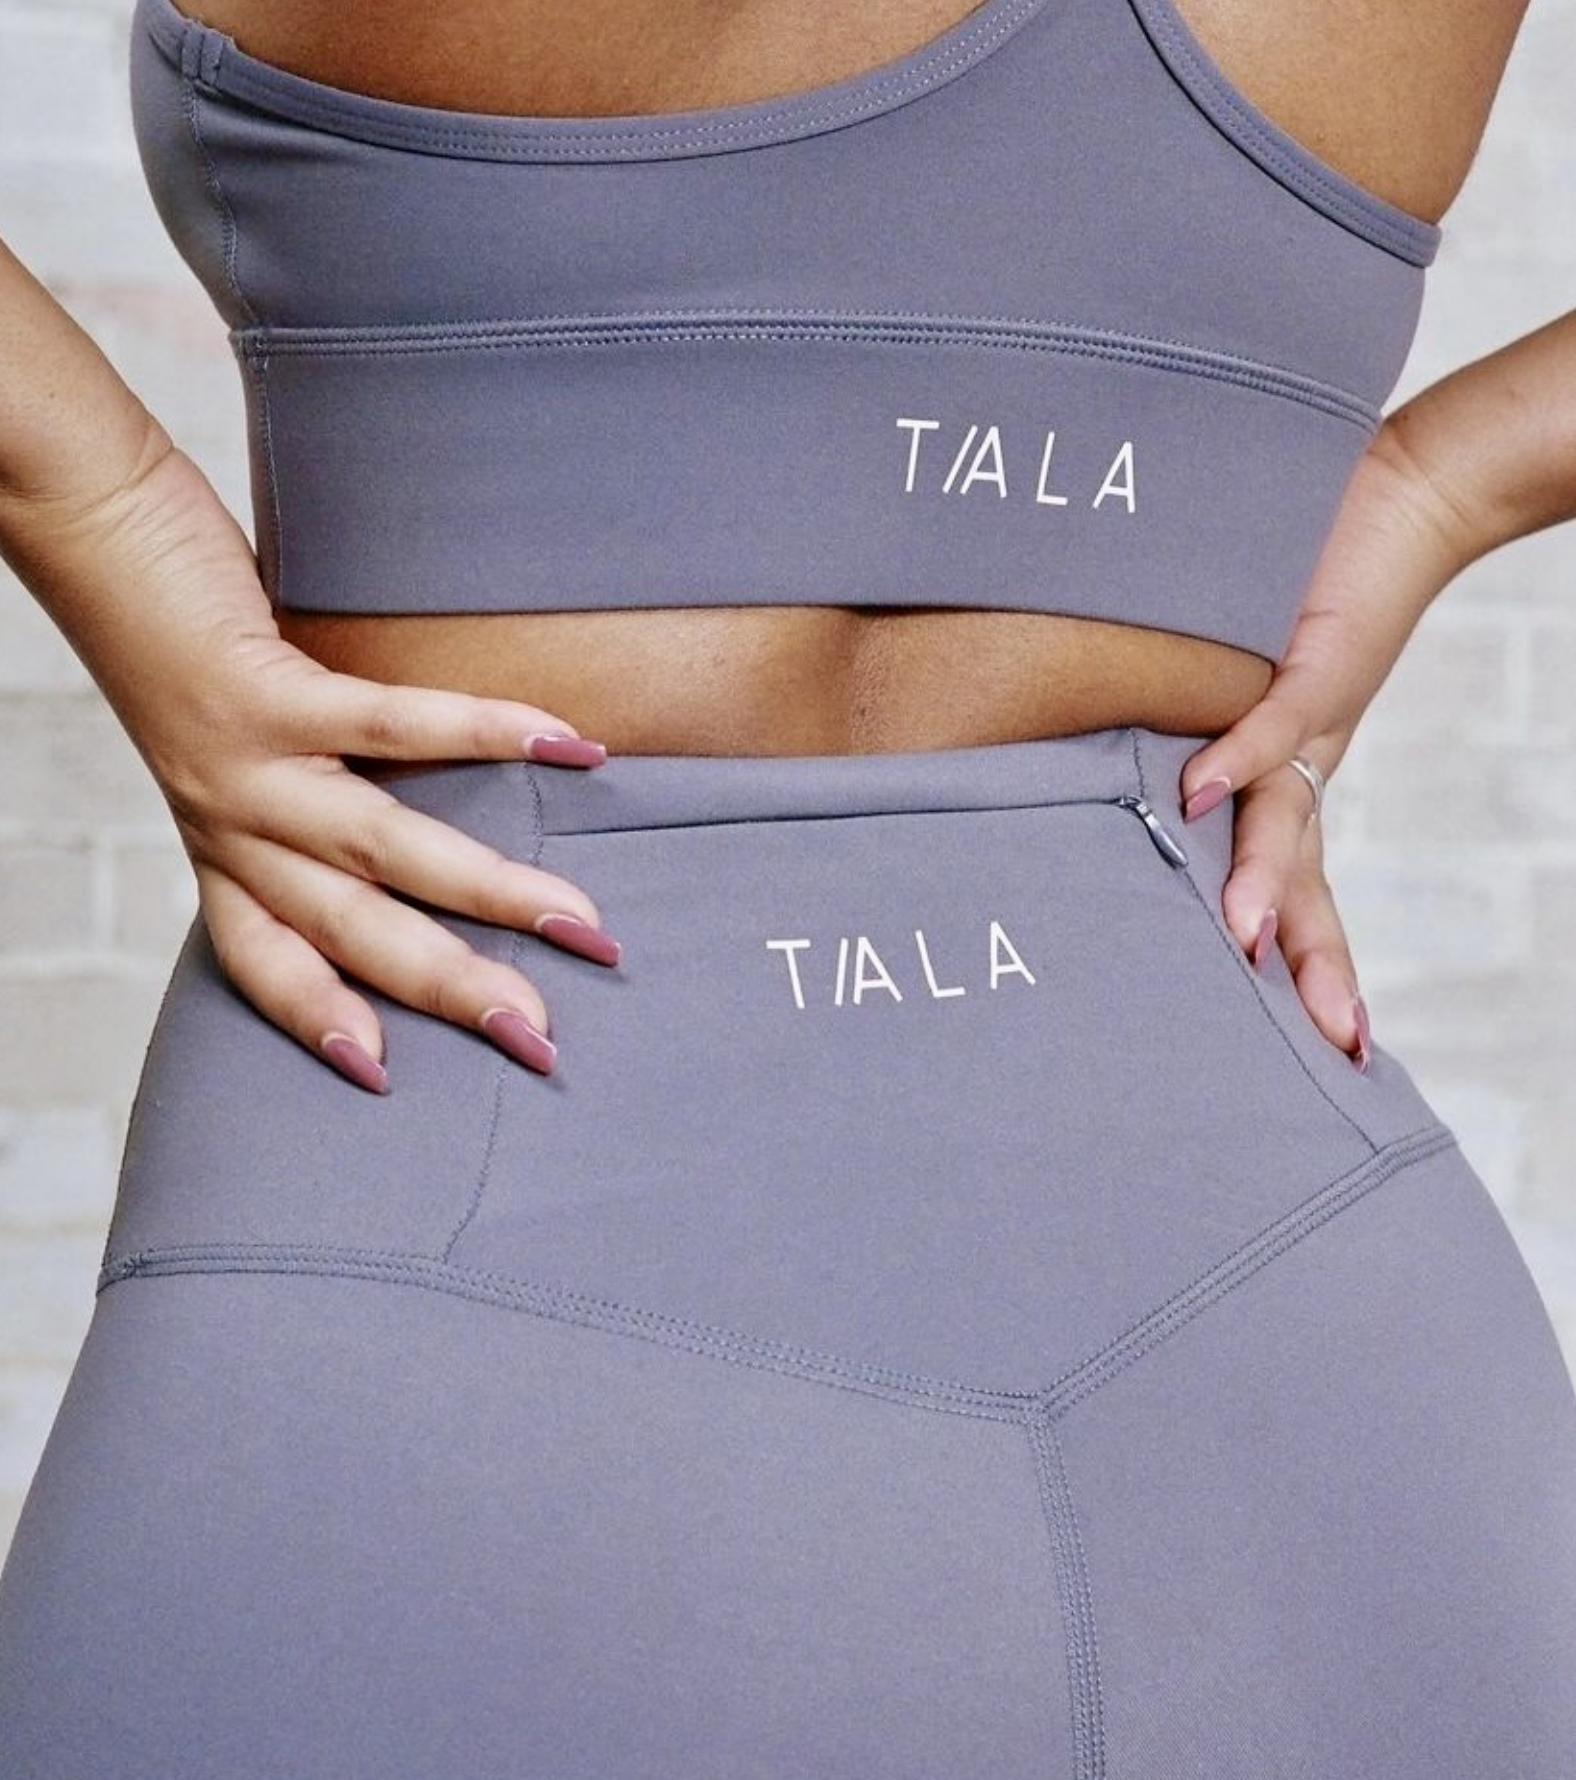 Tala, Intimates & Sleepwear, Tala Sports Bra